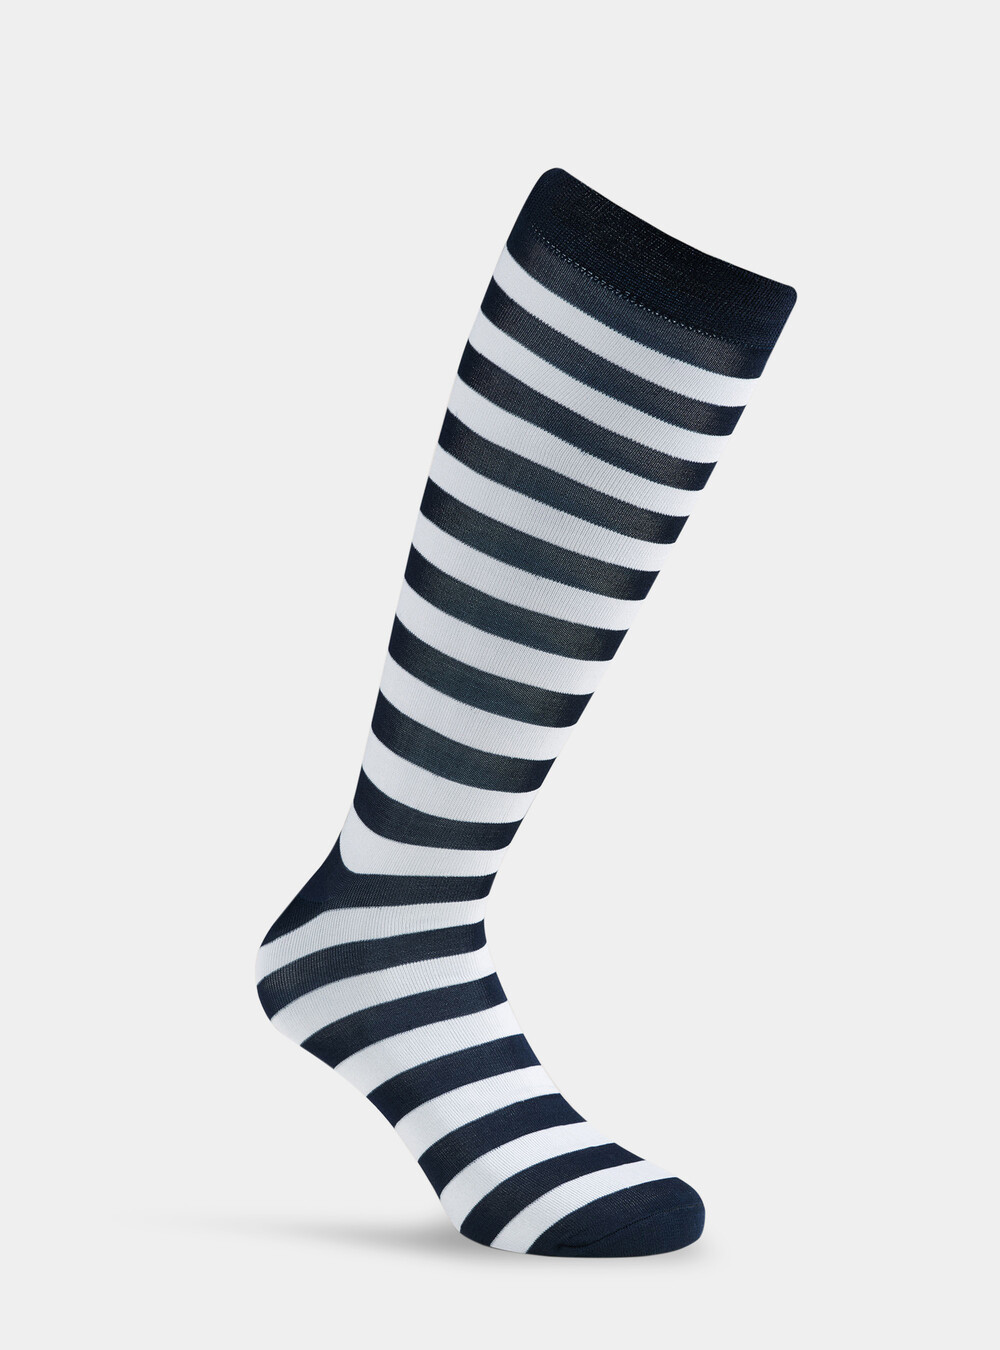 Long striped socks, GutteridgeUS